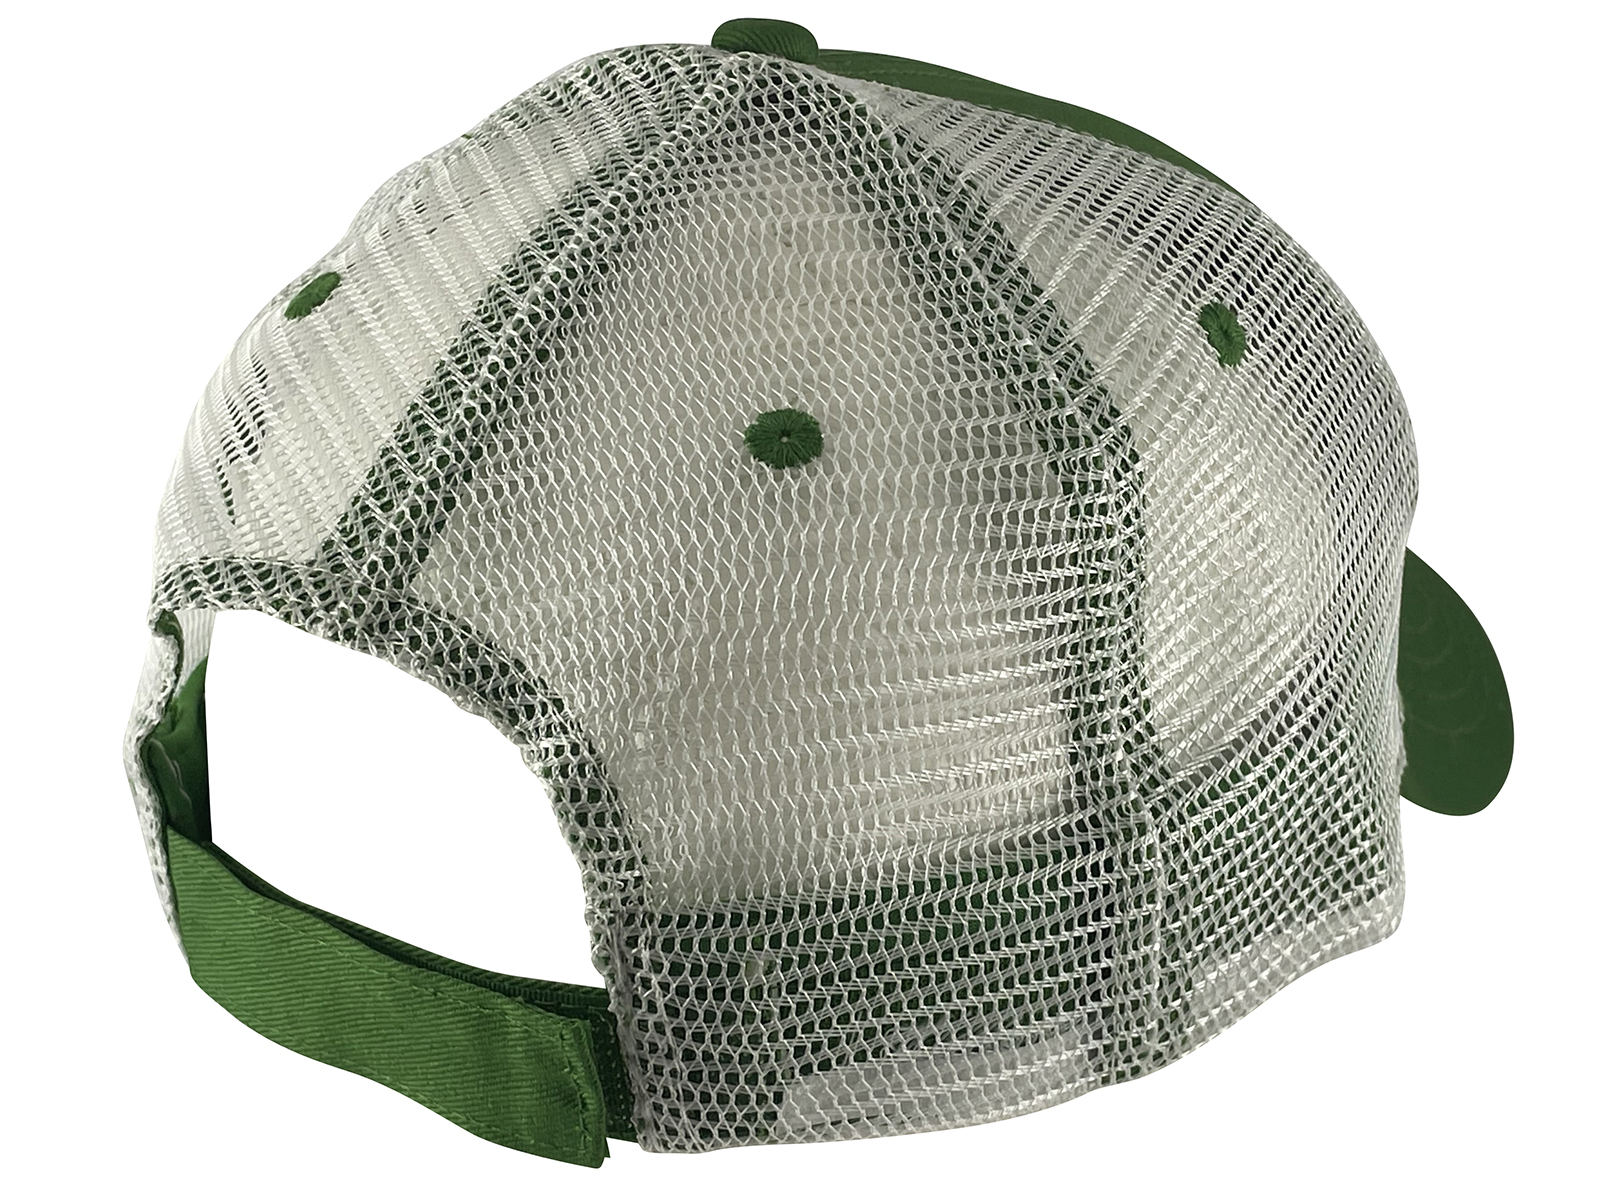 JD John Deere Adjustable Trucker Mesh Strap Hat, Green/White